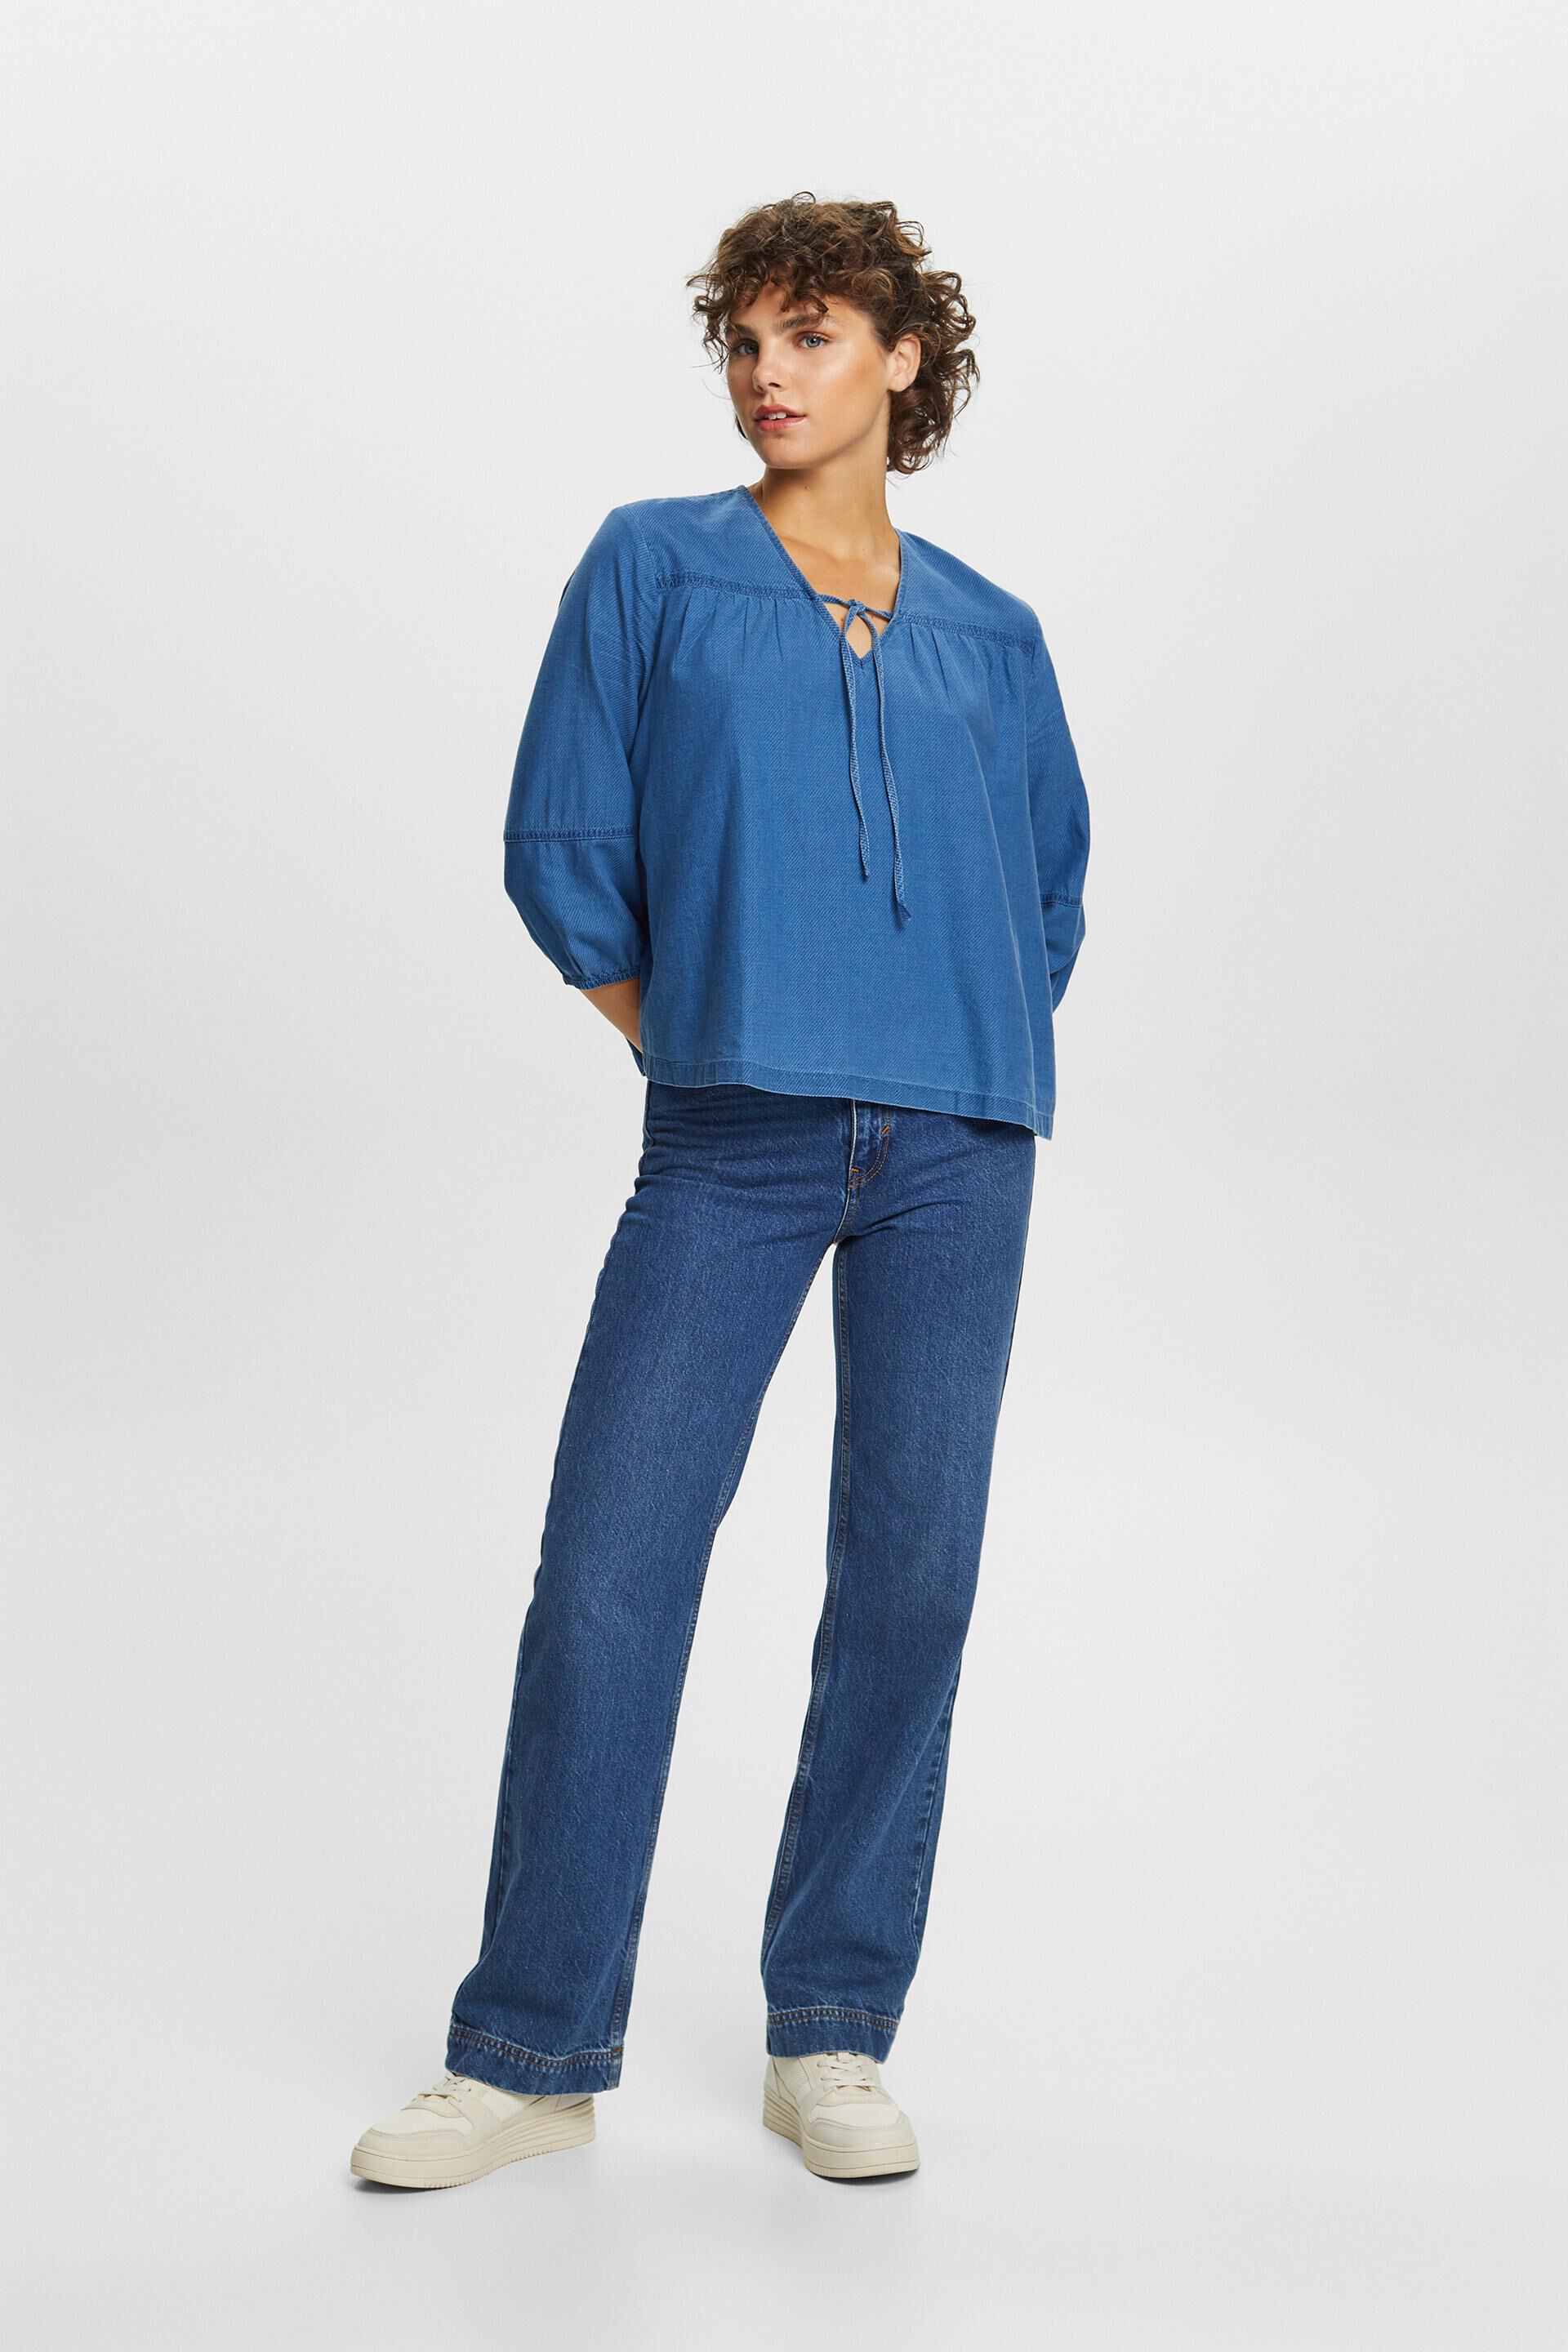 ESPRIT - Bluse aus Baumwolltwill in unserem Online Shop